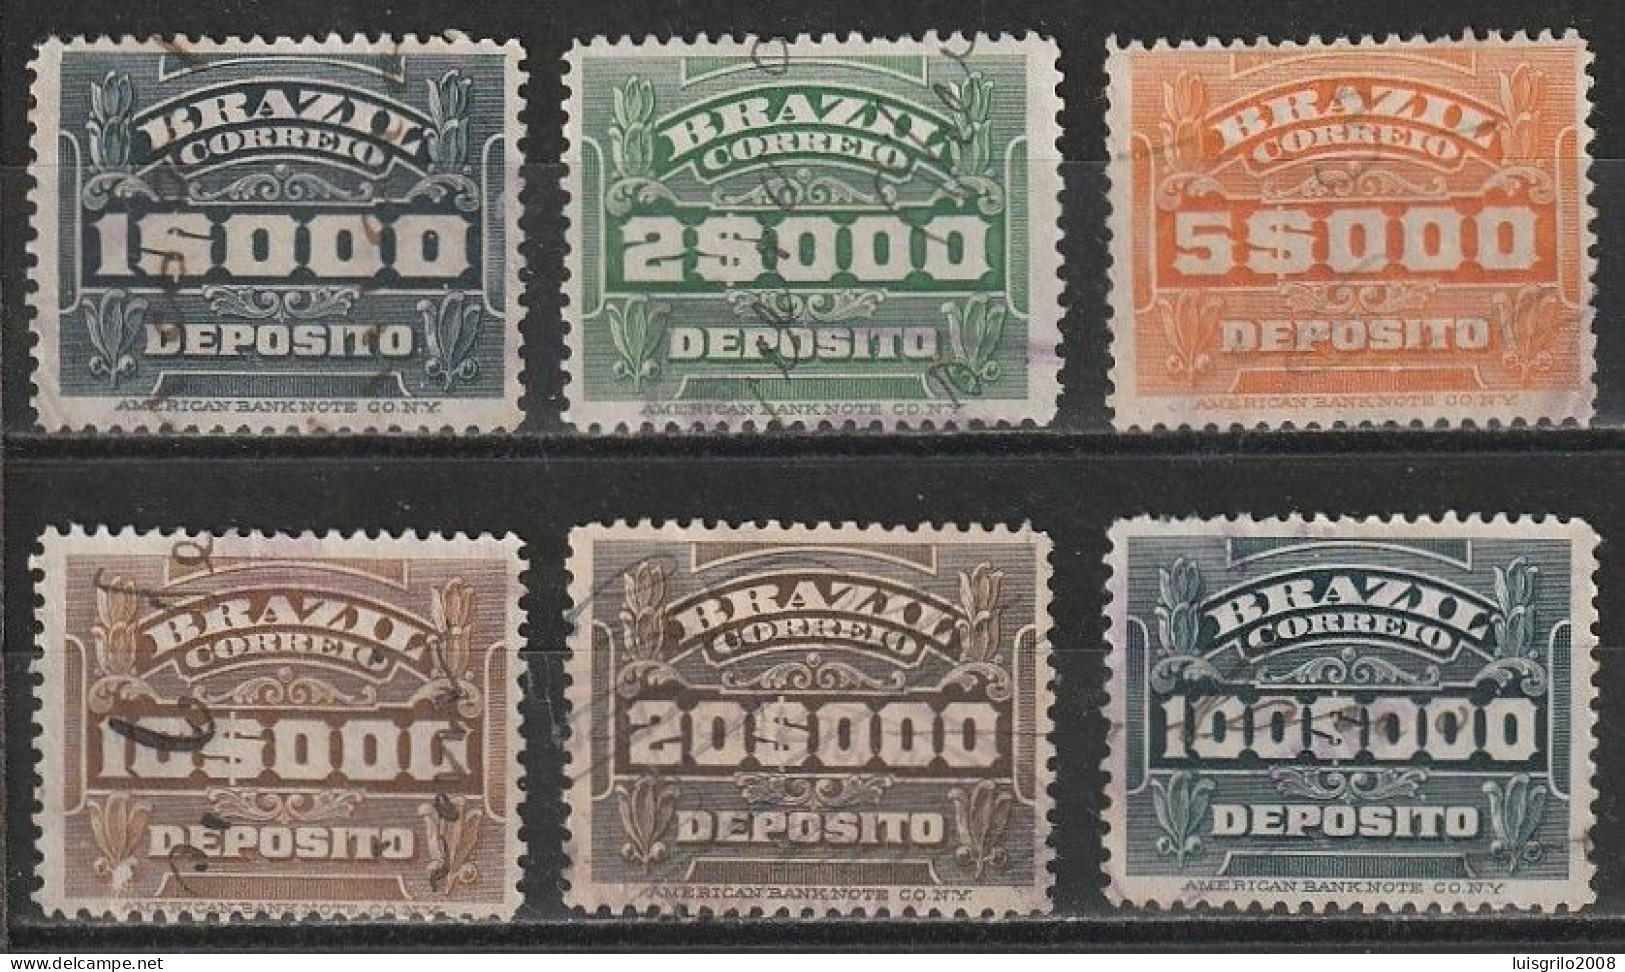 Revenue/ Fiscaux, Brazil 1920 - Depósito, Receita Fiscal -|- 1$000, 2$000, 5$000, 10$000, 20$000, 100$000 - Timbres-taxe